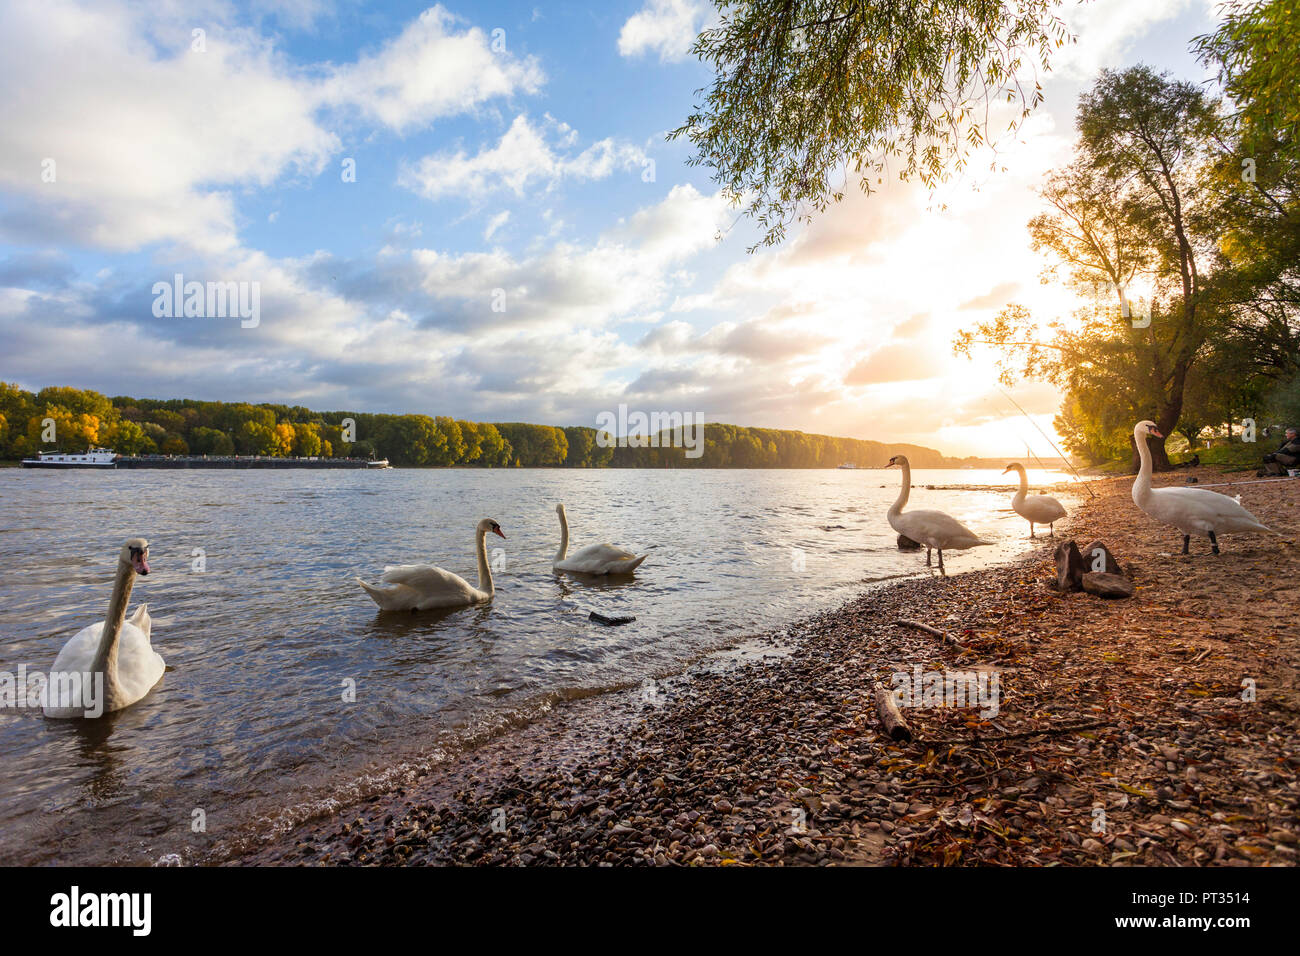 Morning scene at River Rhine in Bonn, Germany, Stock Photo